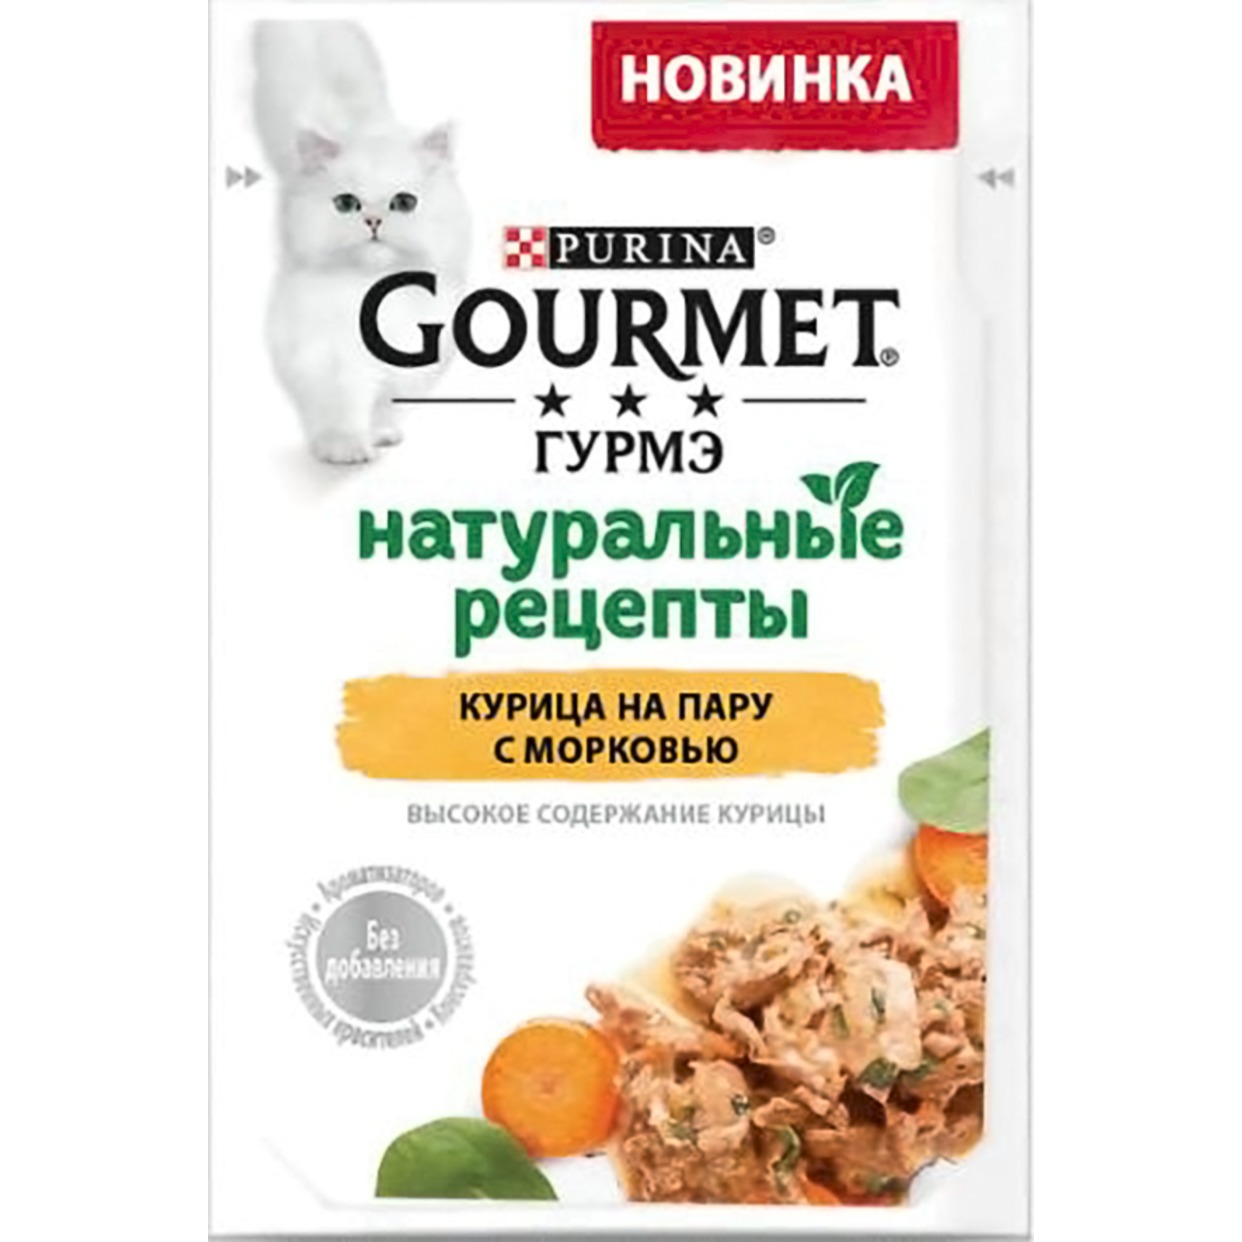 Влажный корм для кошек Гурмэ® Натуральные рецепты с курицей и морковью 75 г х 26 шт. по акции в Пятерочке